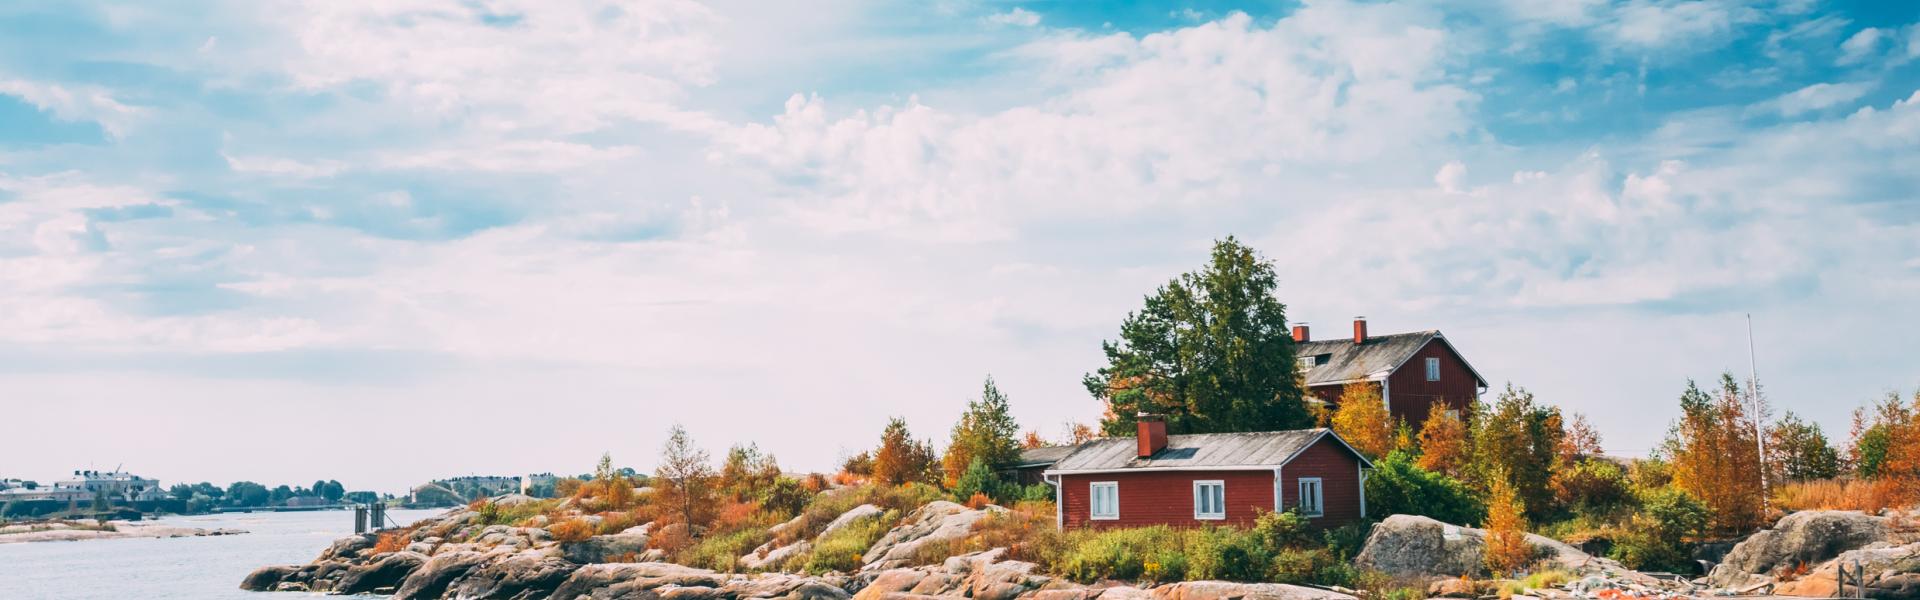 Ferienwohnungen und Ferienhäuser in Finnland - HomeToGo